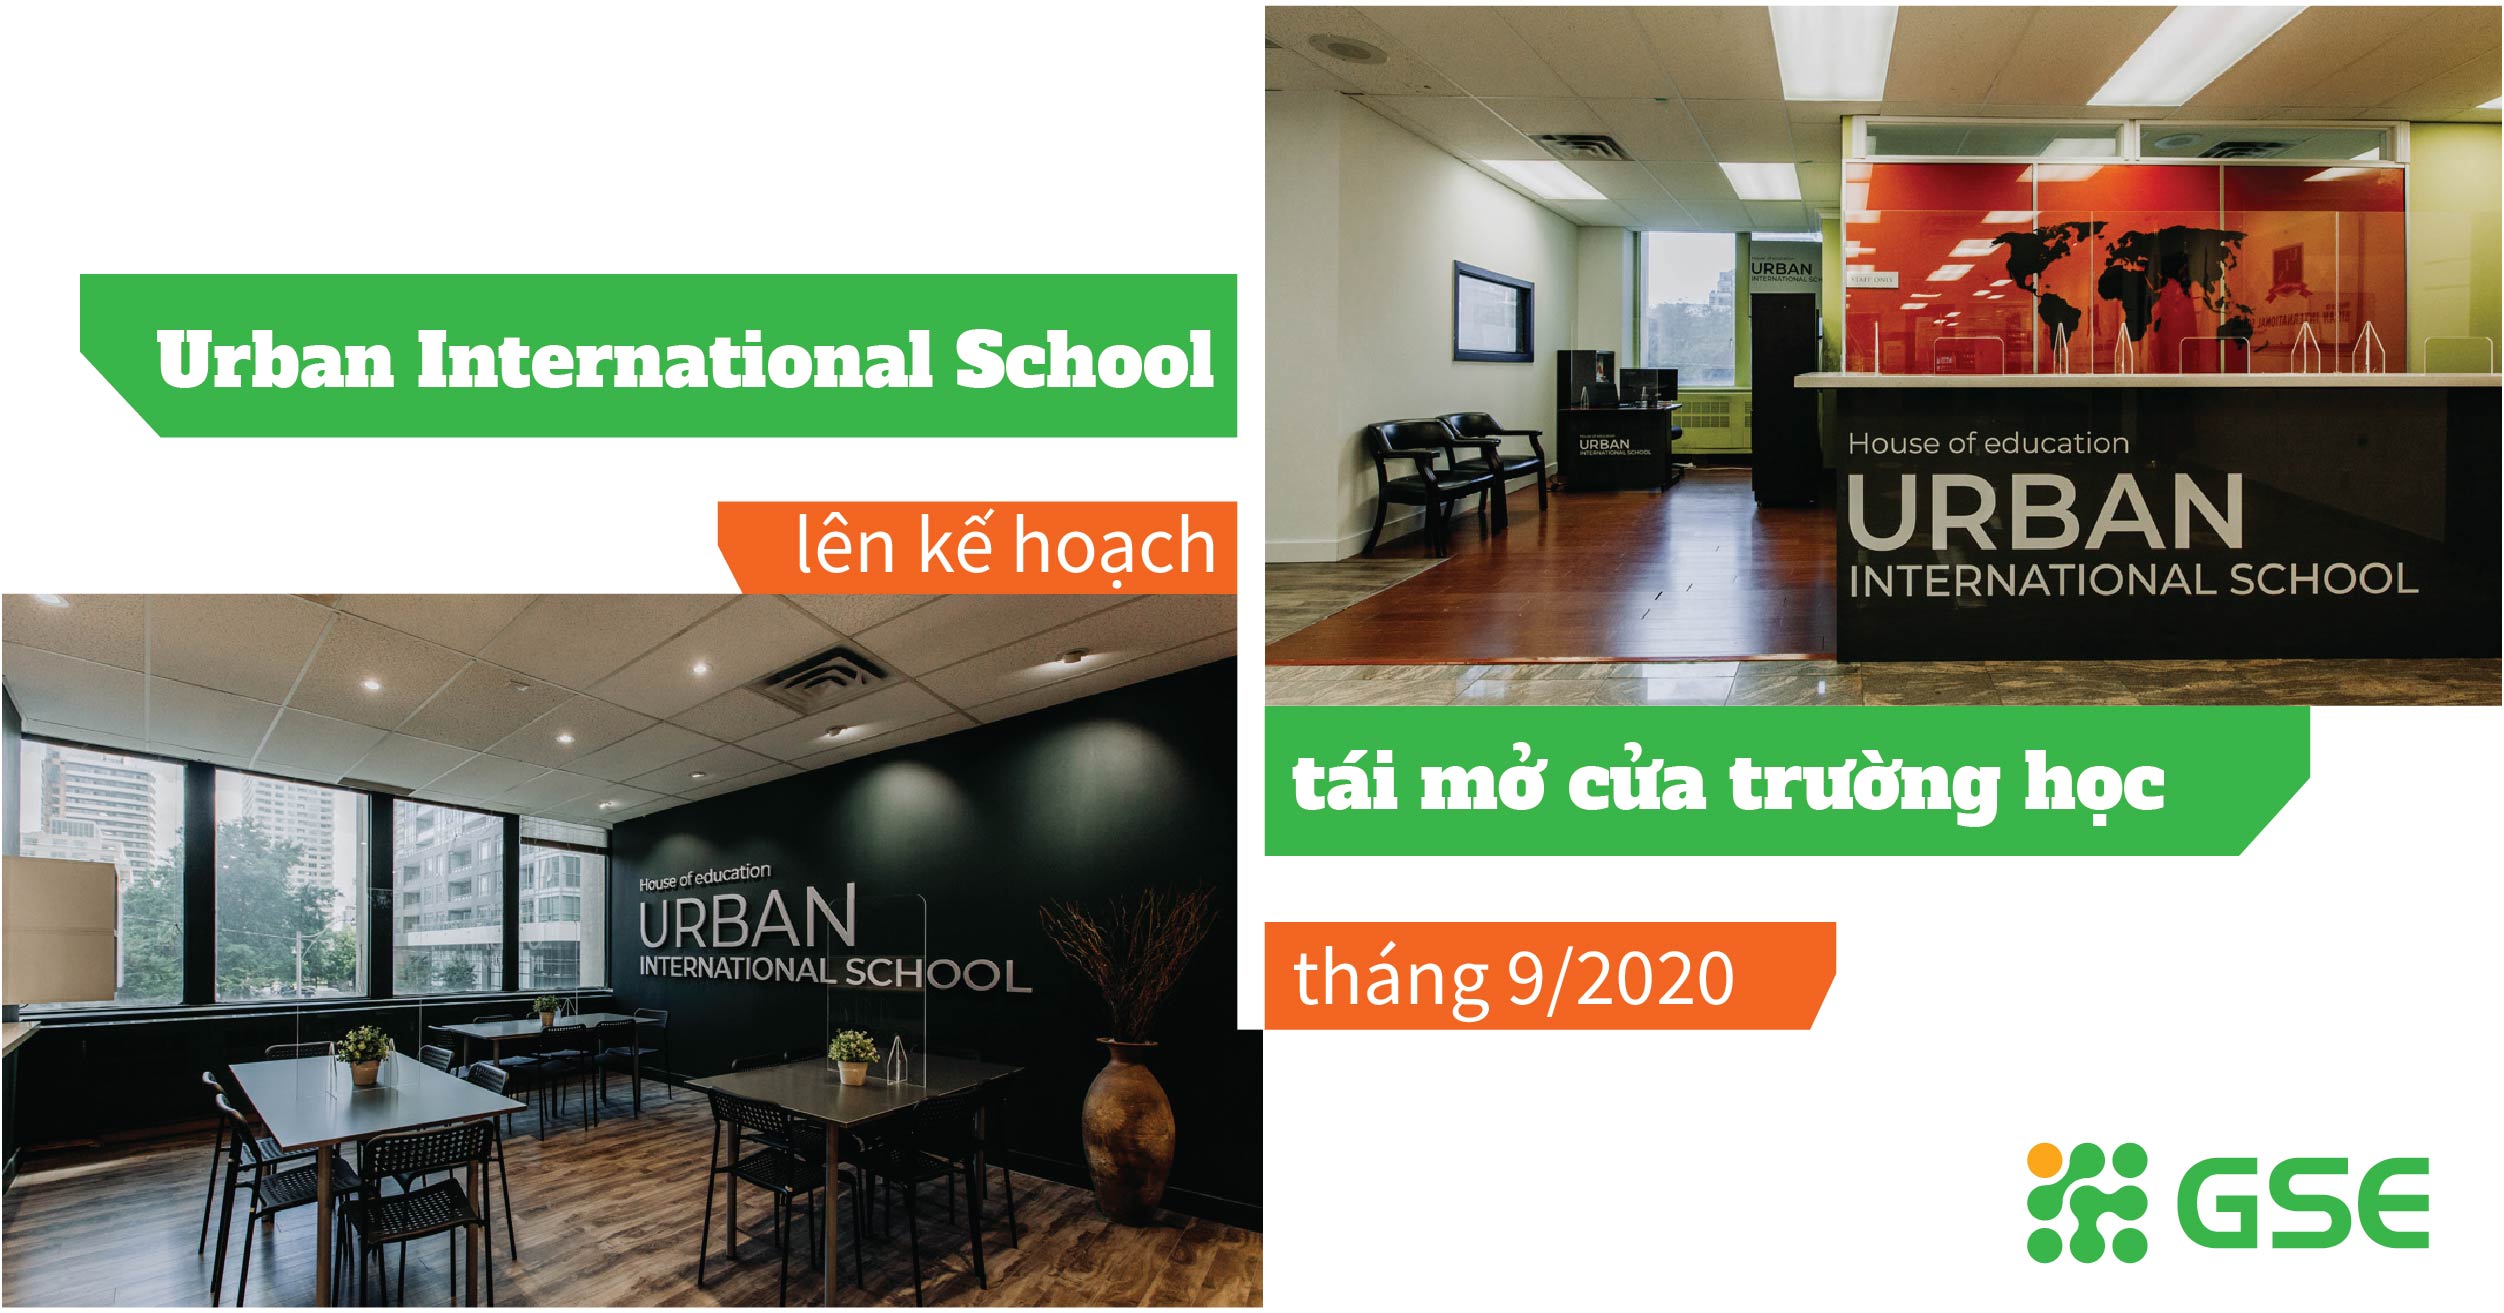 Urban International School lên kế hoạch mở cửa trường học trở lại tháng 9/2020